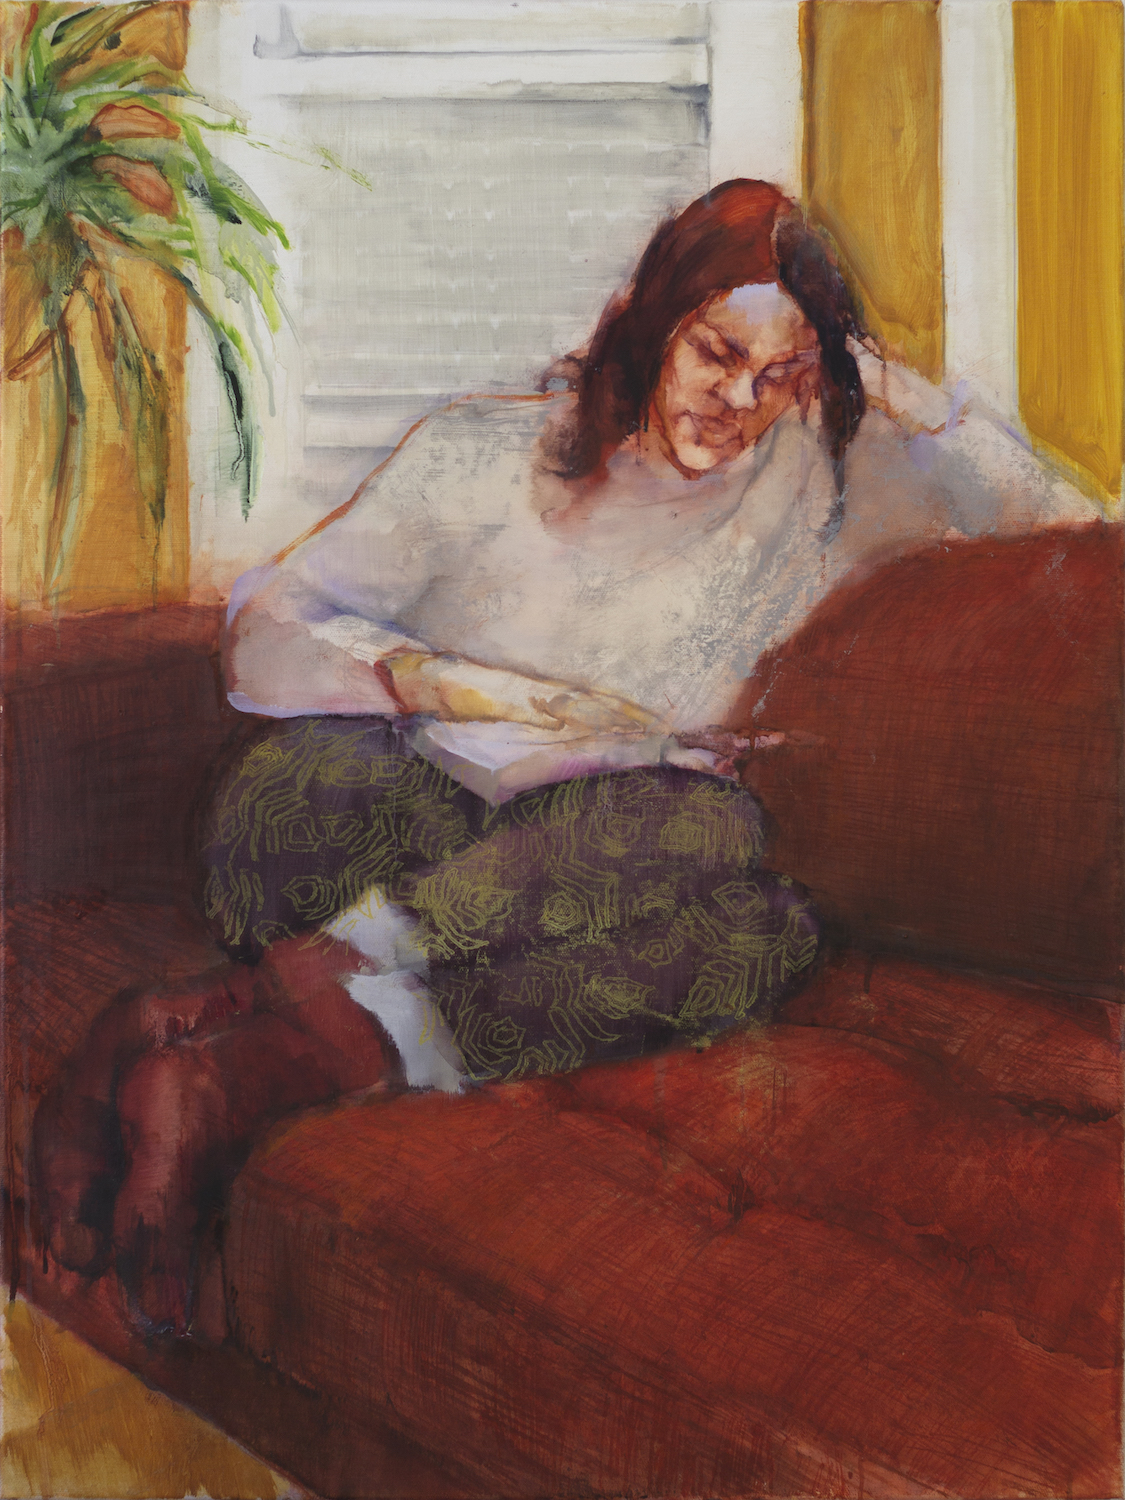 Kimberly Klauss. Jackson's Painting Prize.